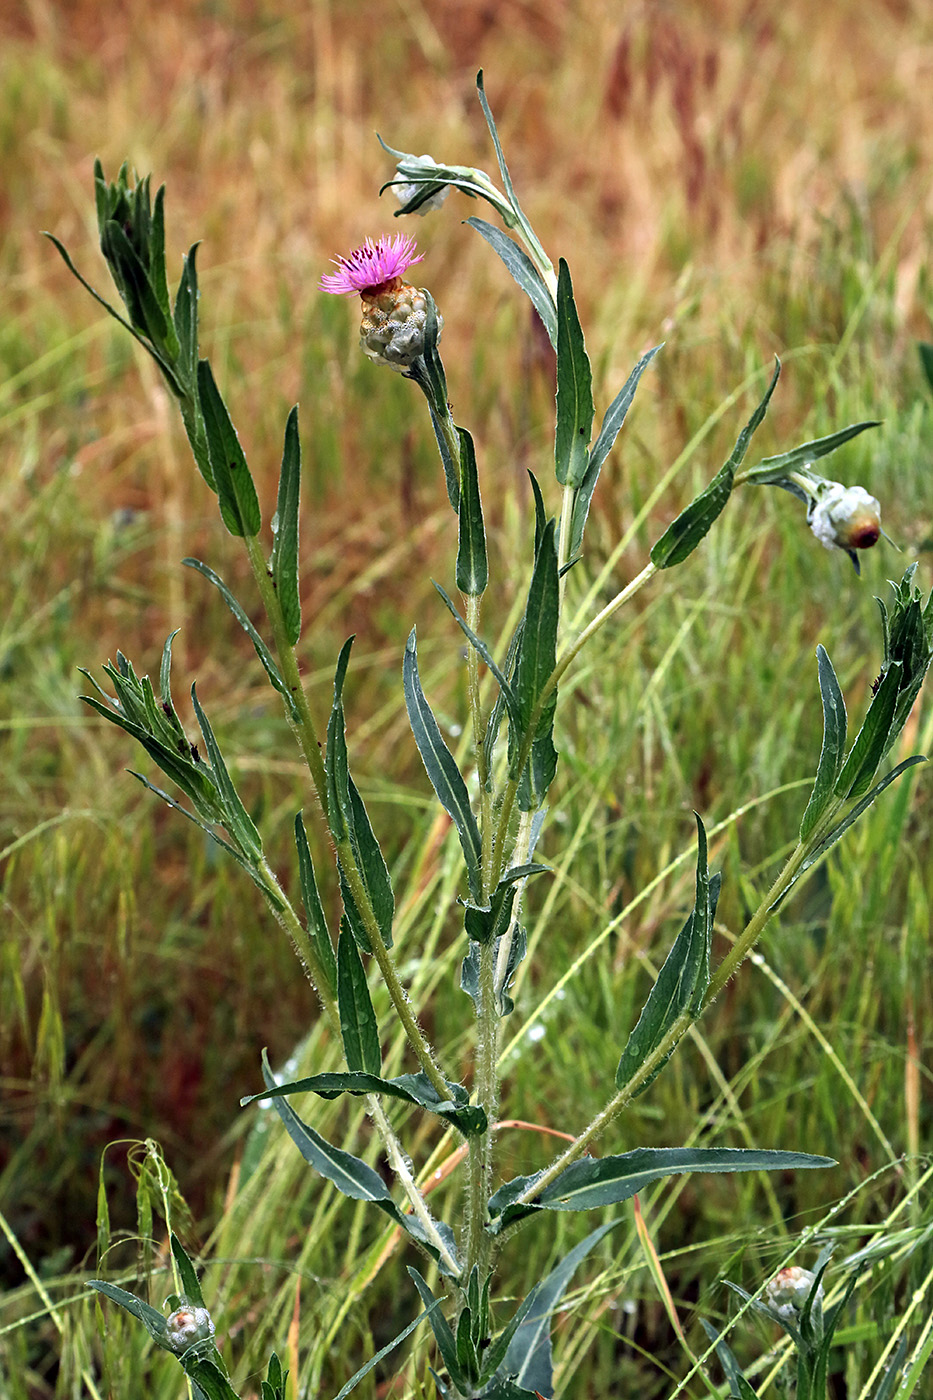 Image of Hyalea tadshicorum specimen.